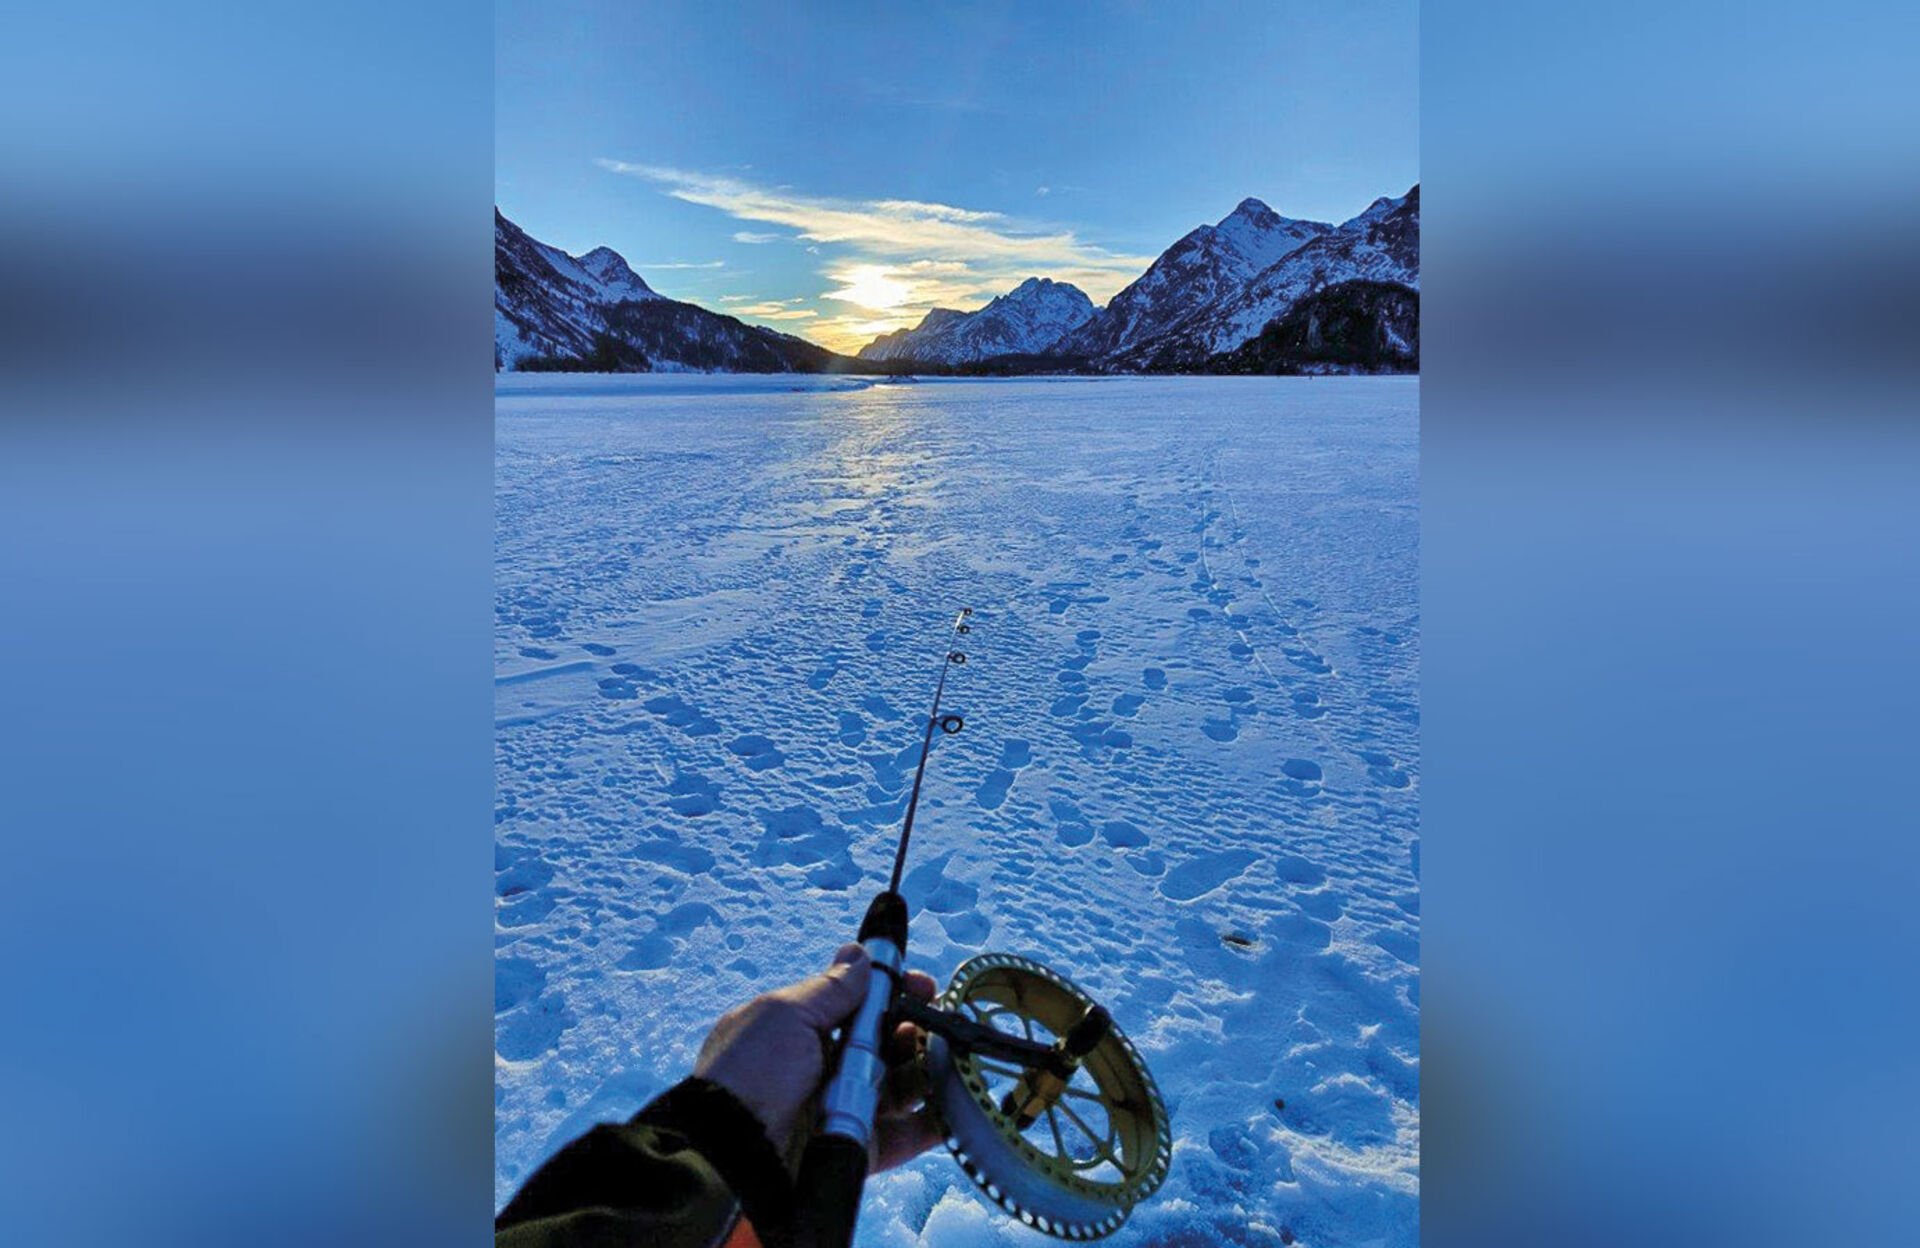  Das Eisfischen auf dem gefrorenen Silsersee bietet eine Verlängerung der Saison in die Winterzeit ...  